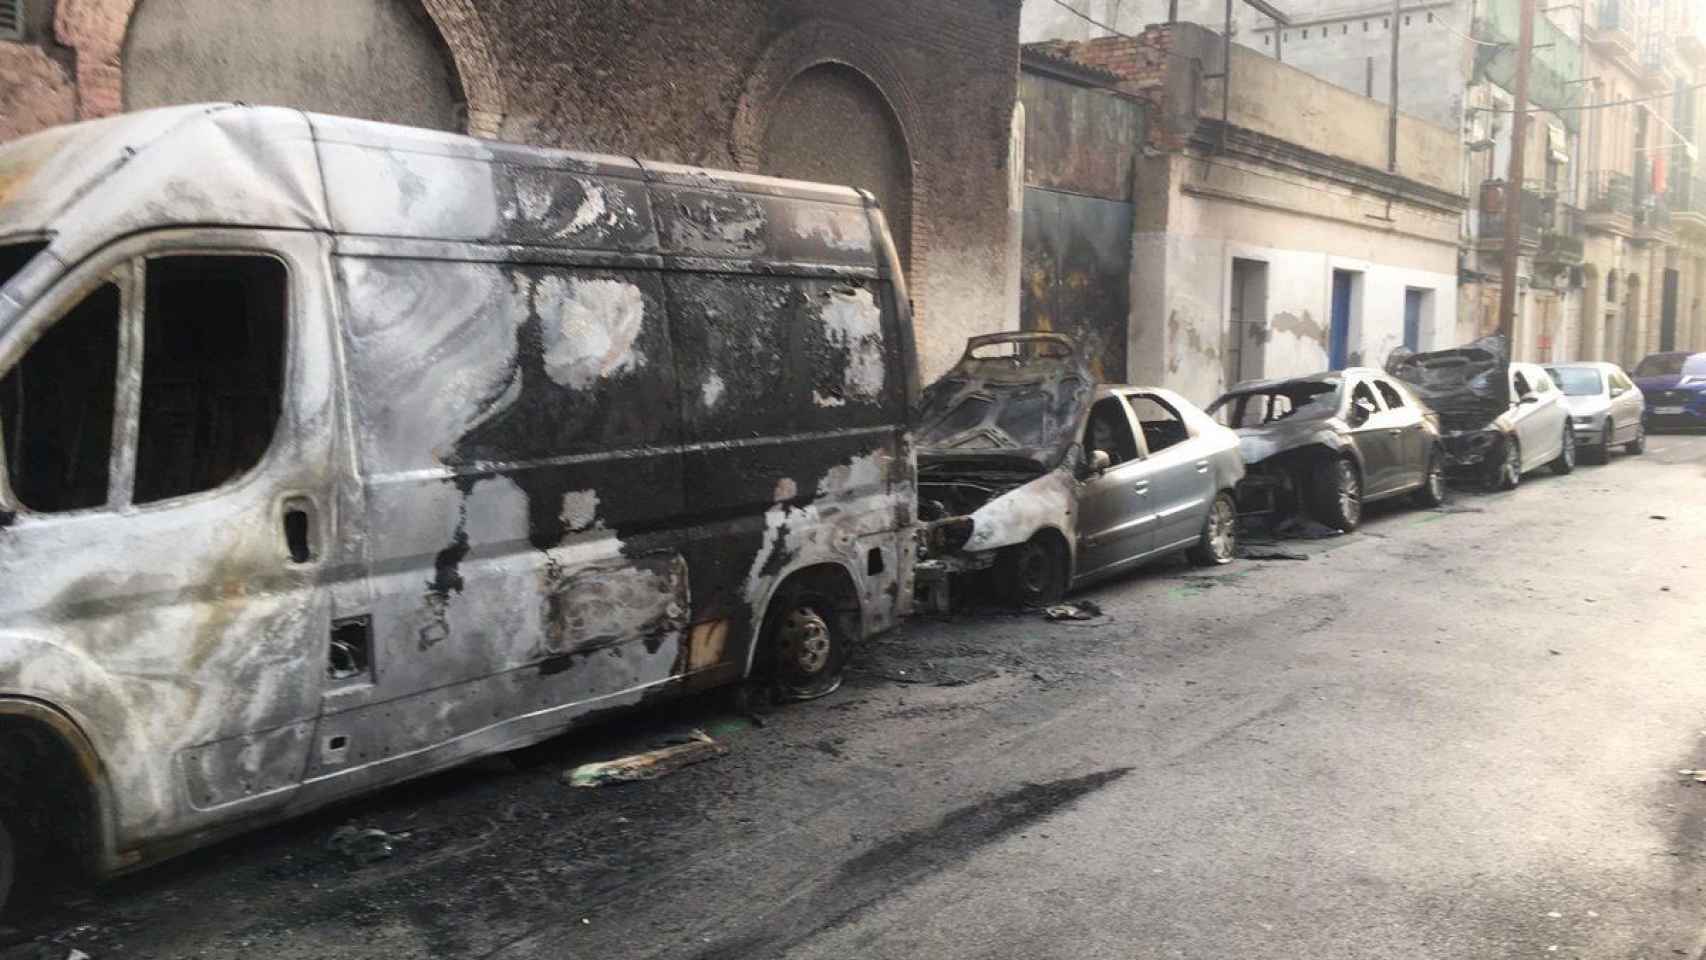 Algunos de los coches quemados intencionadamente en el Poblenou / TWITTER ENRIC BALAGUER